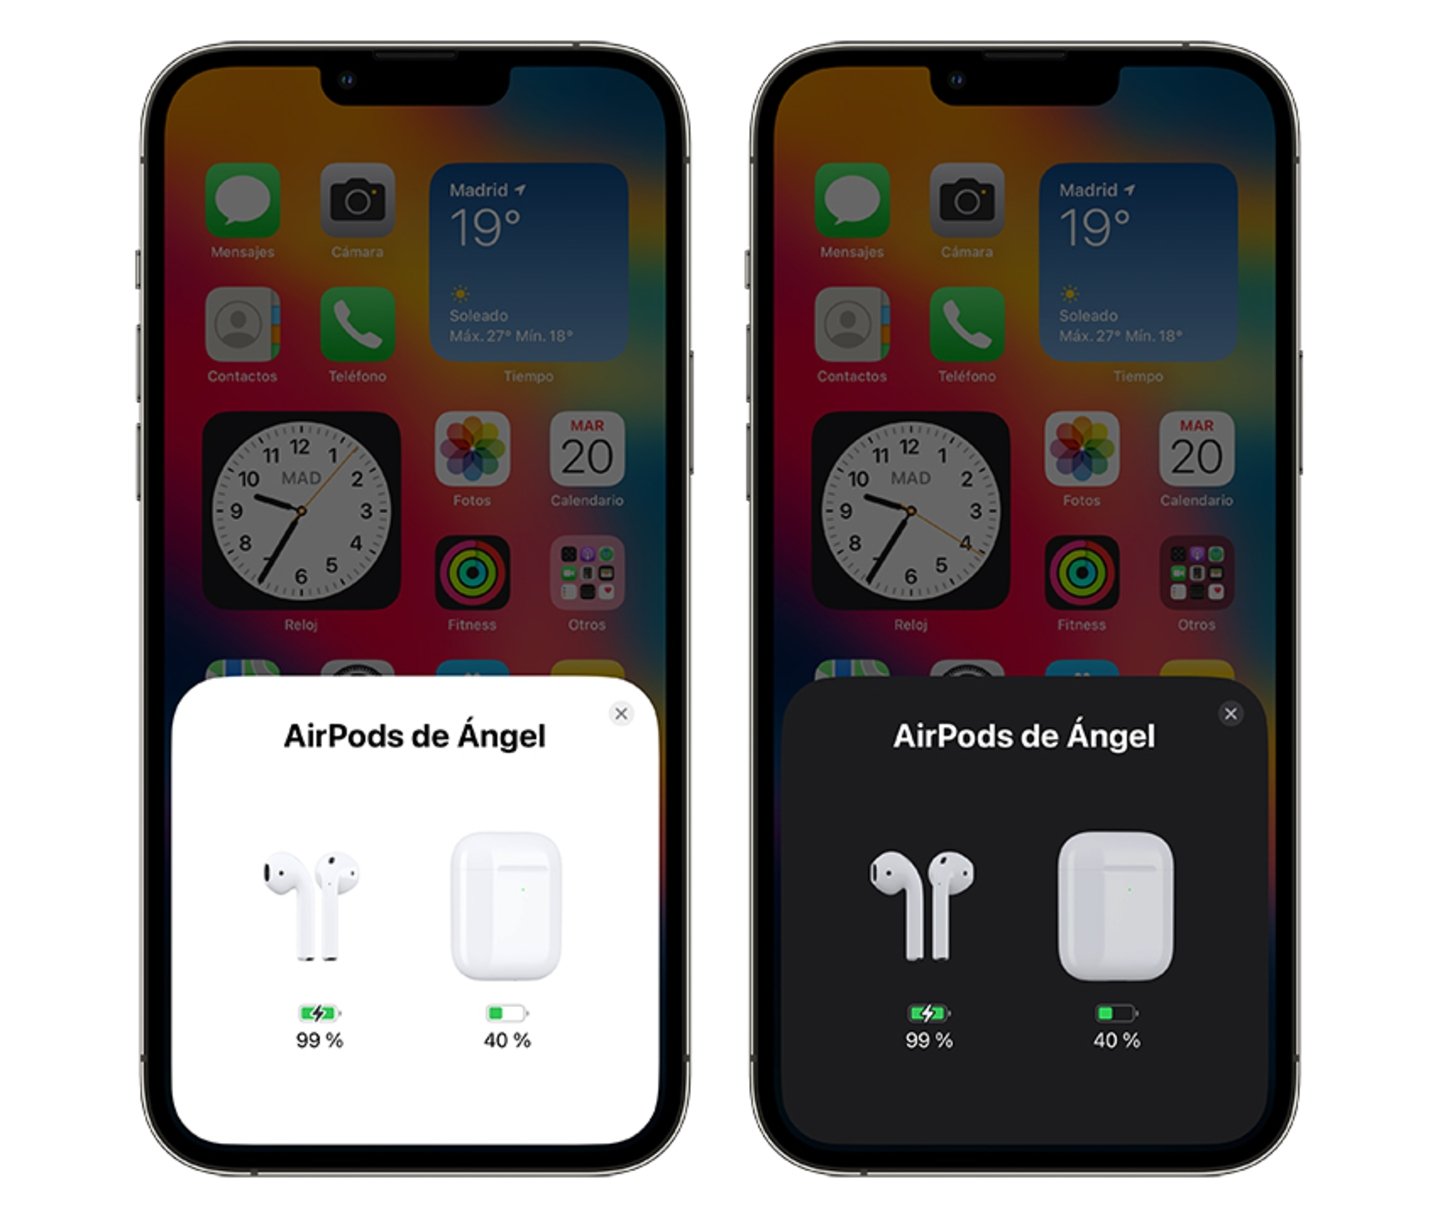 Dos iPhone con l a interfaz de conexión de los AirPods, uno en modo normal y otro en modo oscuro